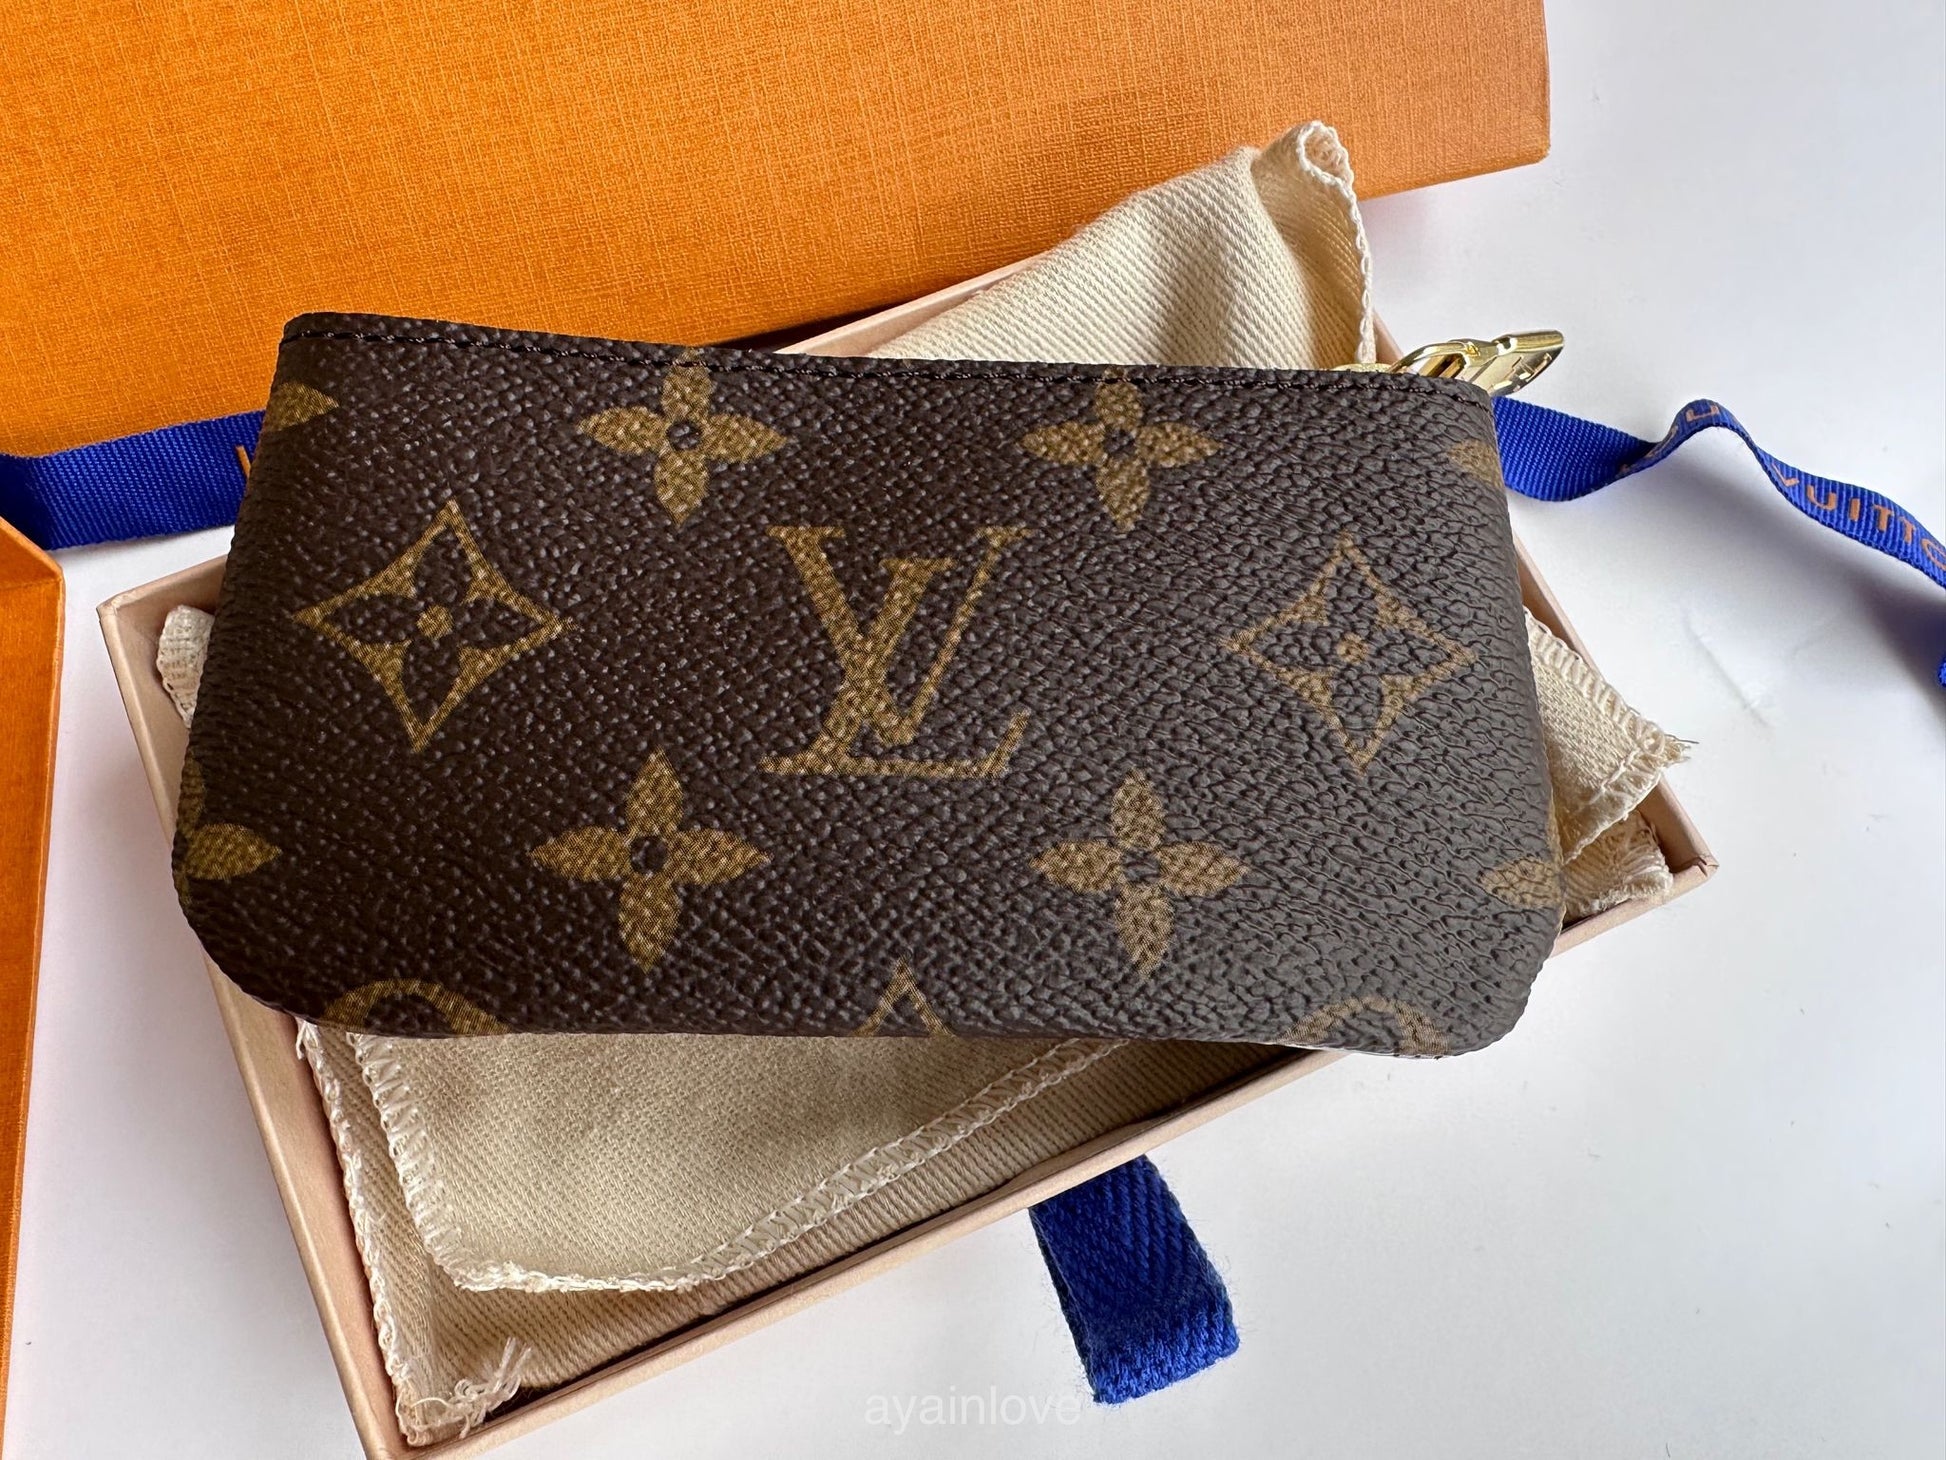 Louis Vuitton Key pouch - Variant